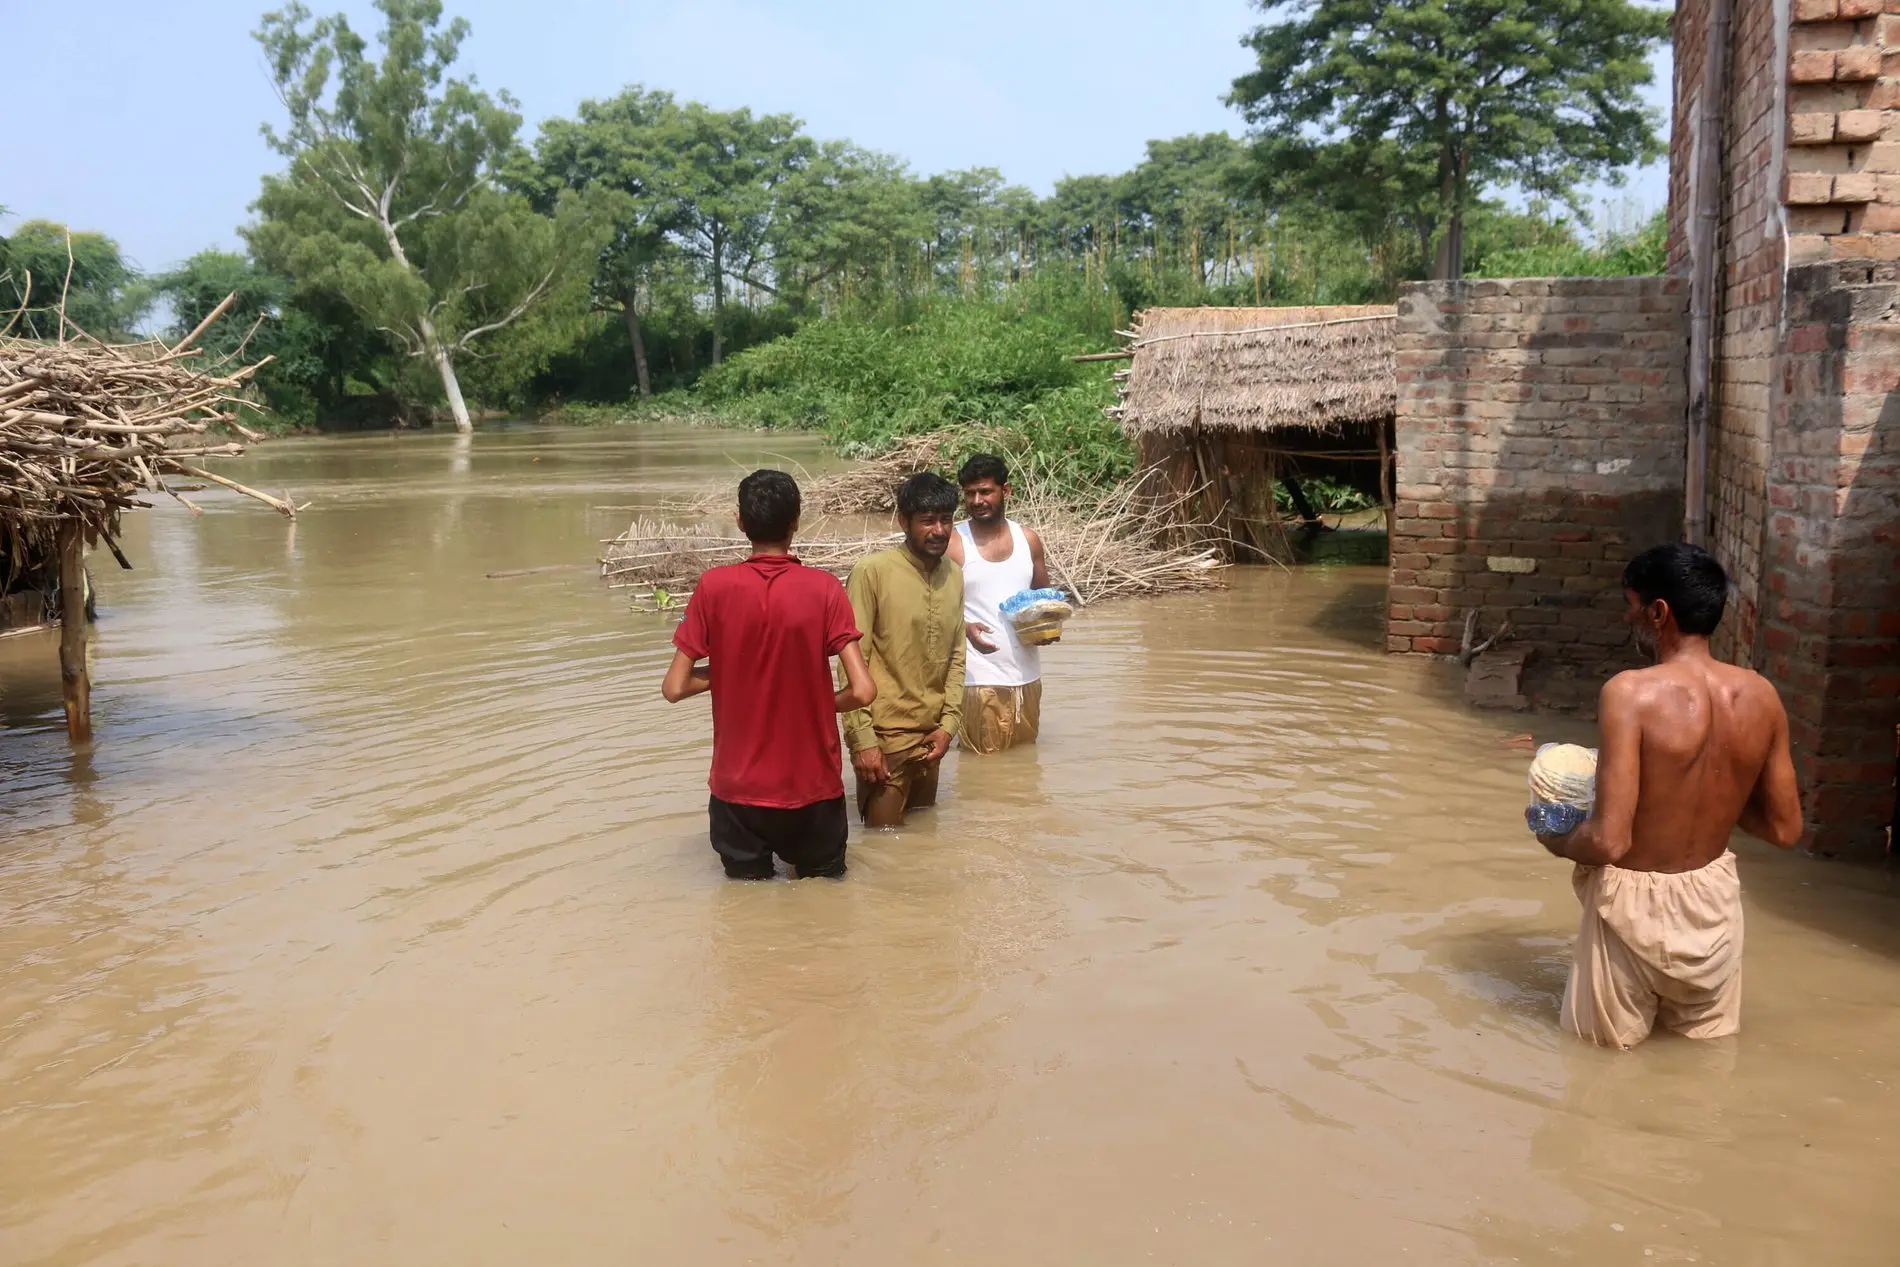 Zu sehen sind Menschen in einer überfluteten Ortschaft.  